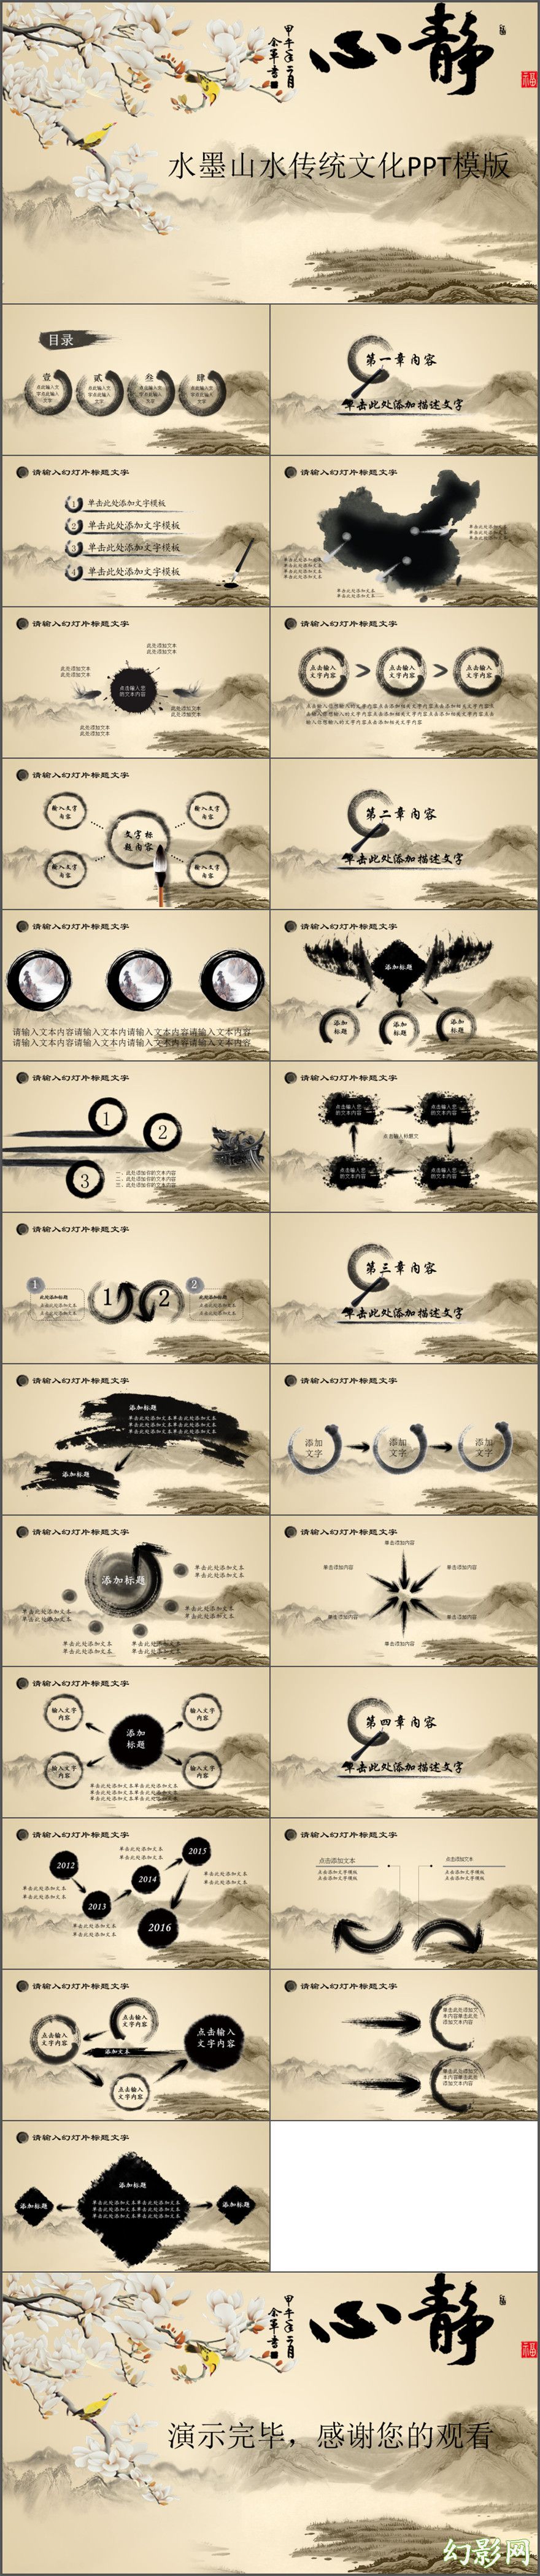 2017水墨山水传统文化PPT模版